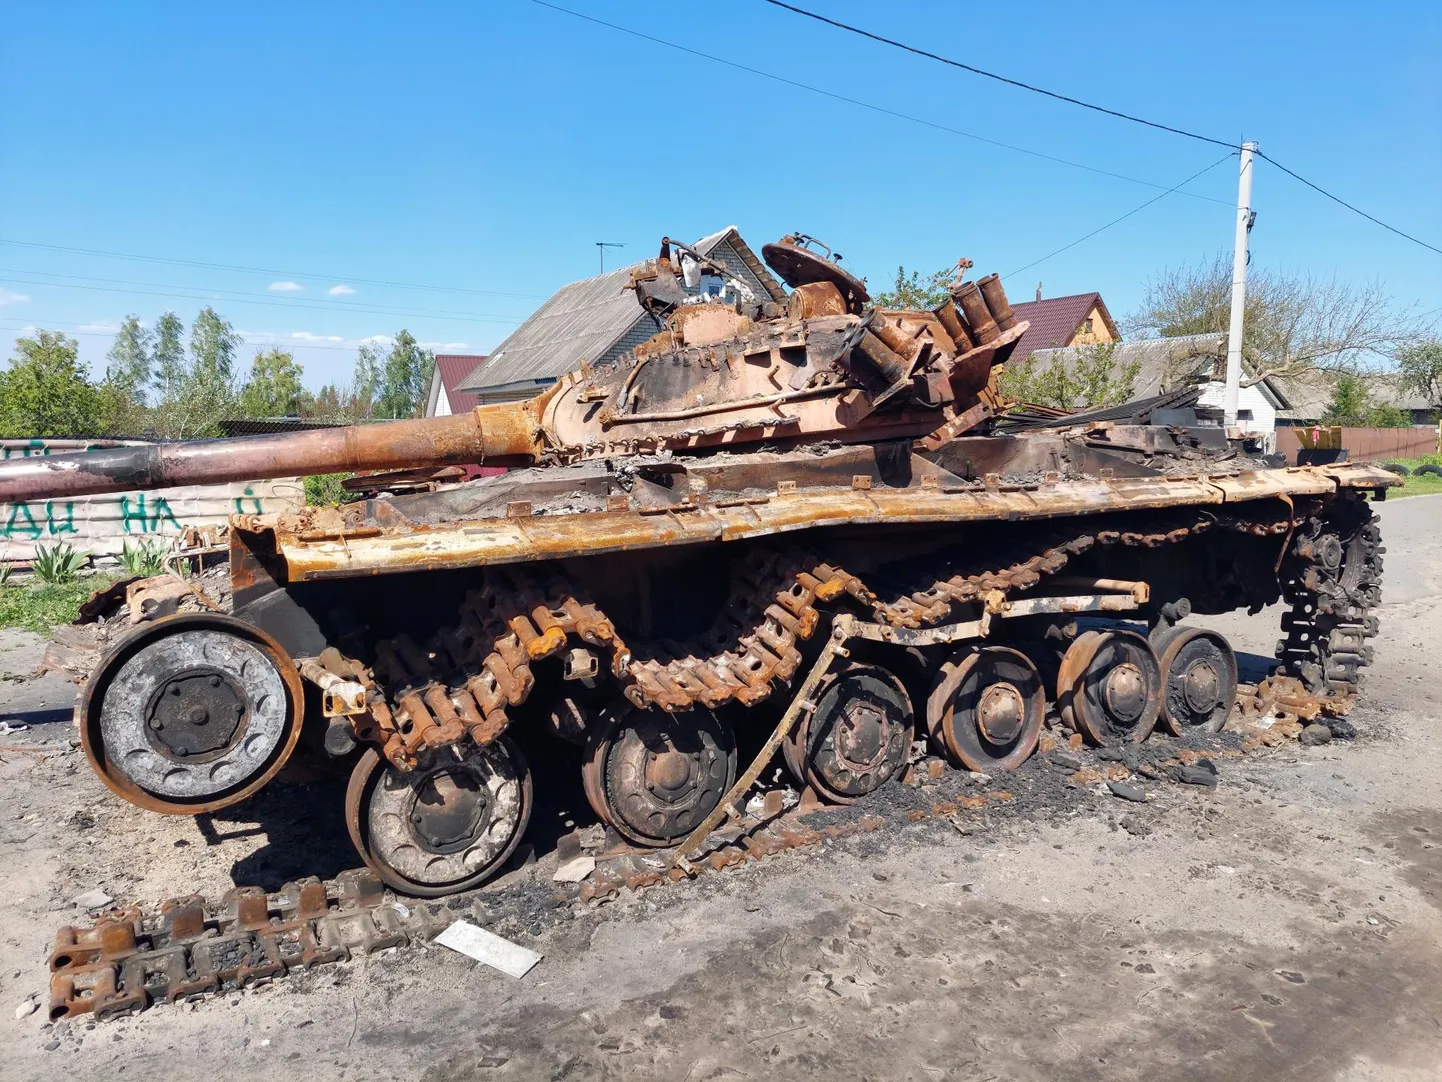 Sellesse Ukraina tanki põlesid sõdurid sisse, sest võitlesid vastu veel põlevast masinast, tulistades välja viimase moona.

 